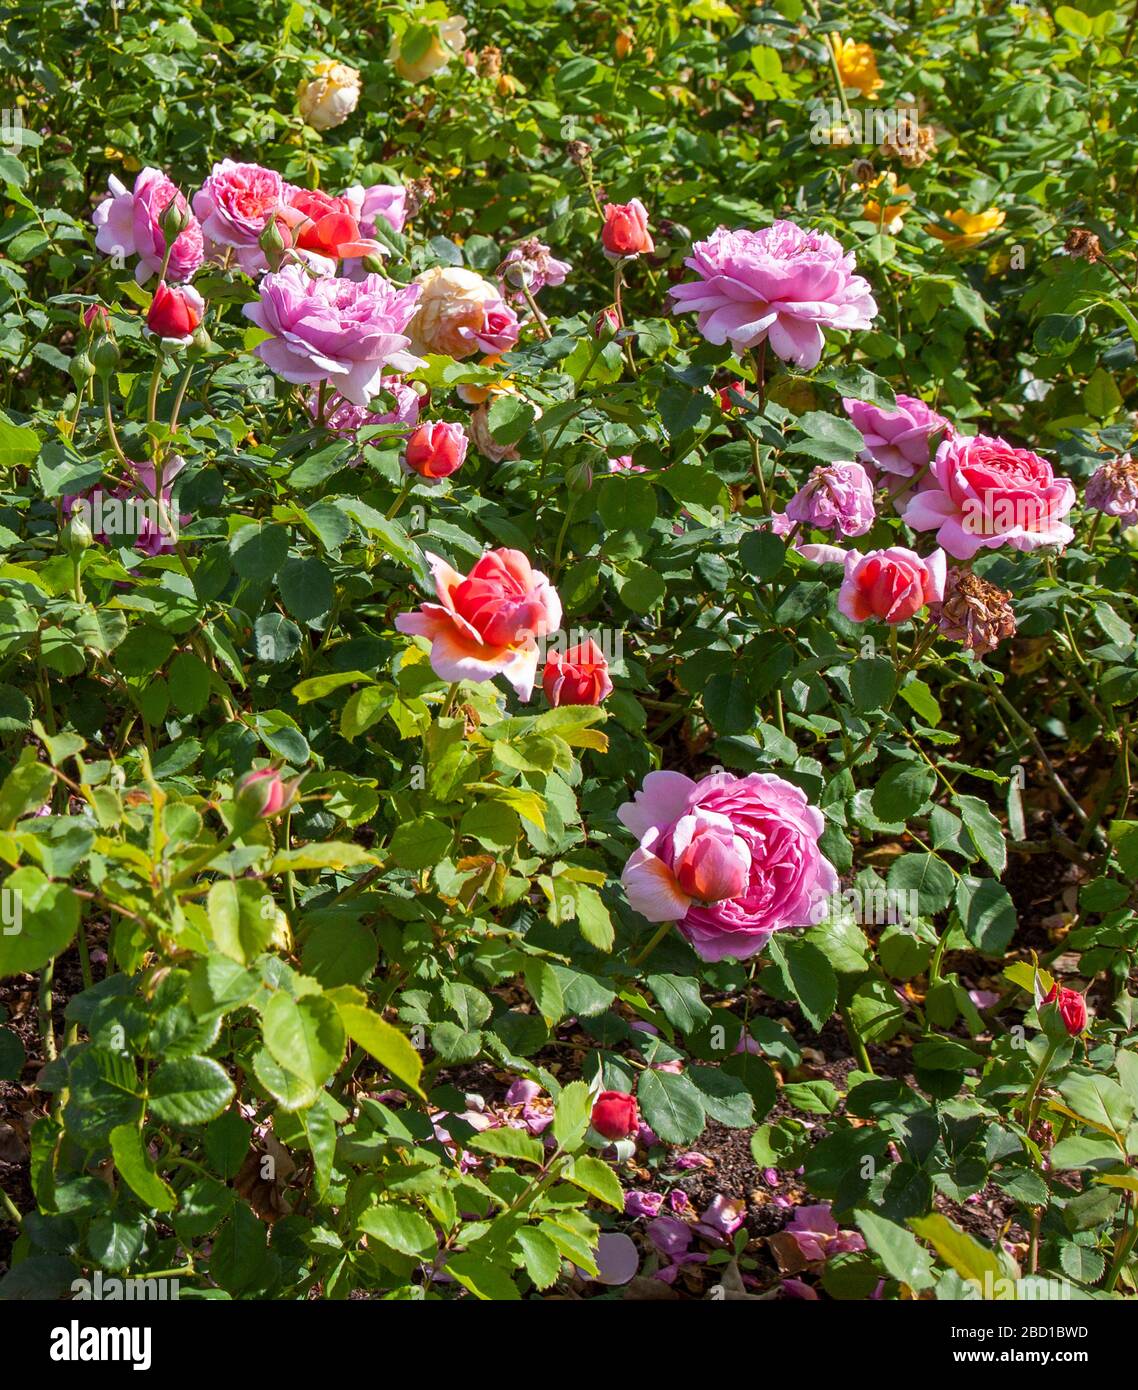 'Princess Alexandra de Kent' floribunda rose, jardins de Hampton court Palace, Richmond upon Thames, Surrey, Angleterre. Banque D'Images